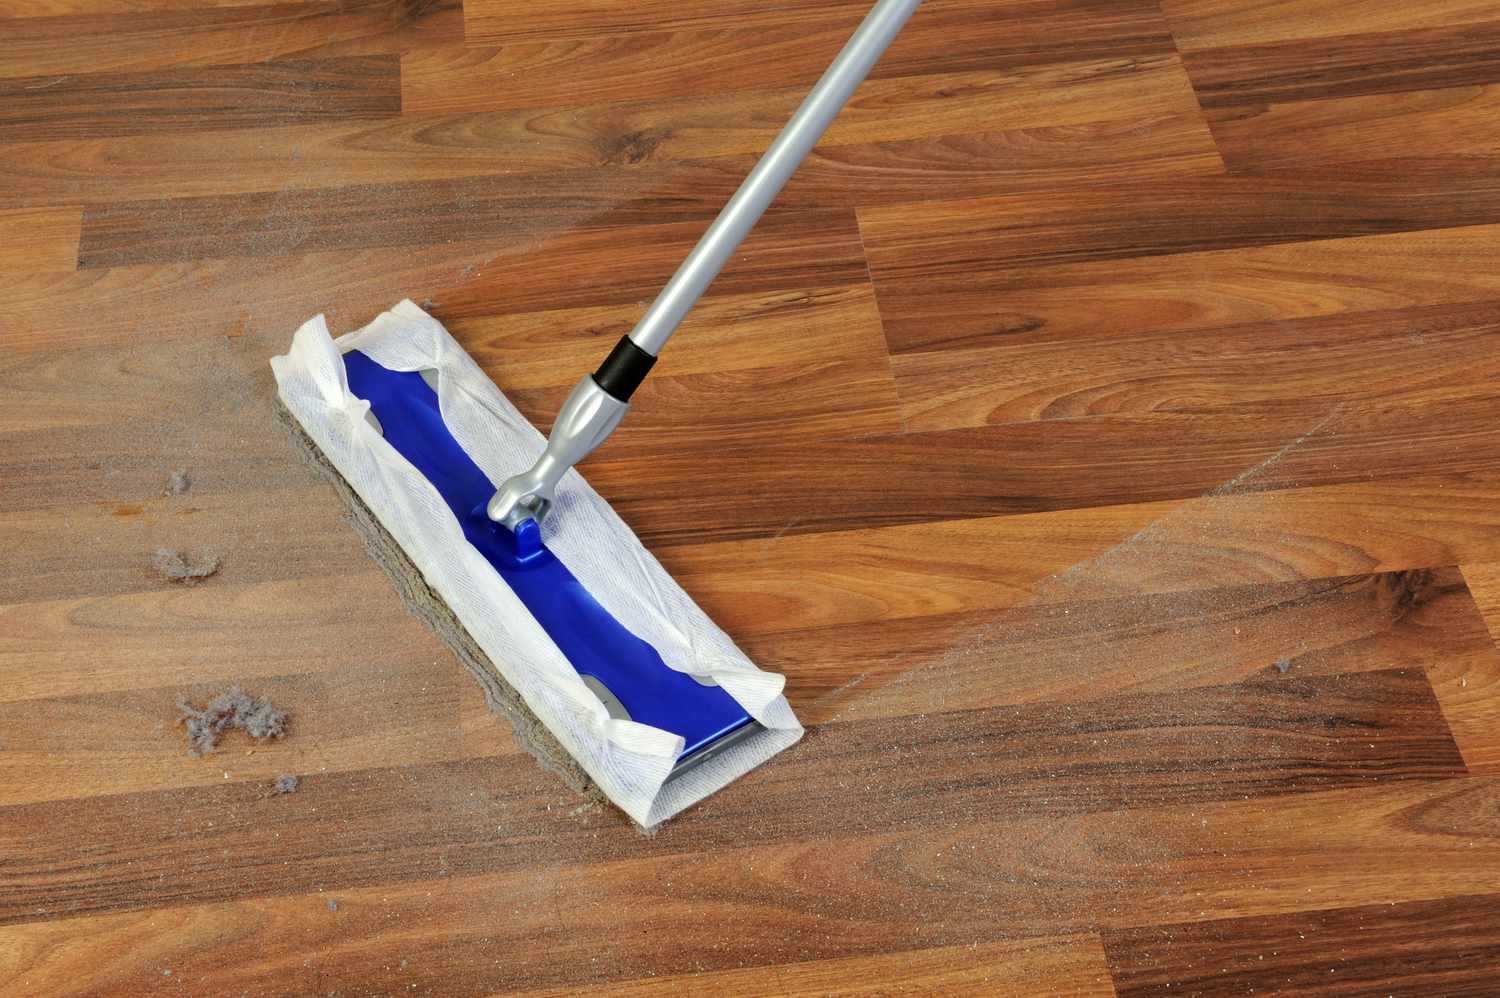 Holzboden mit Mopp reinigen